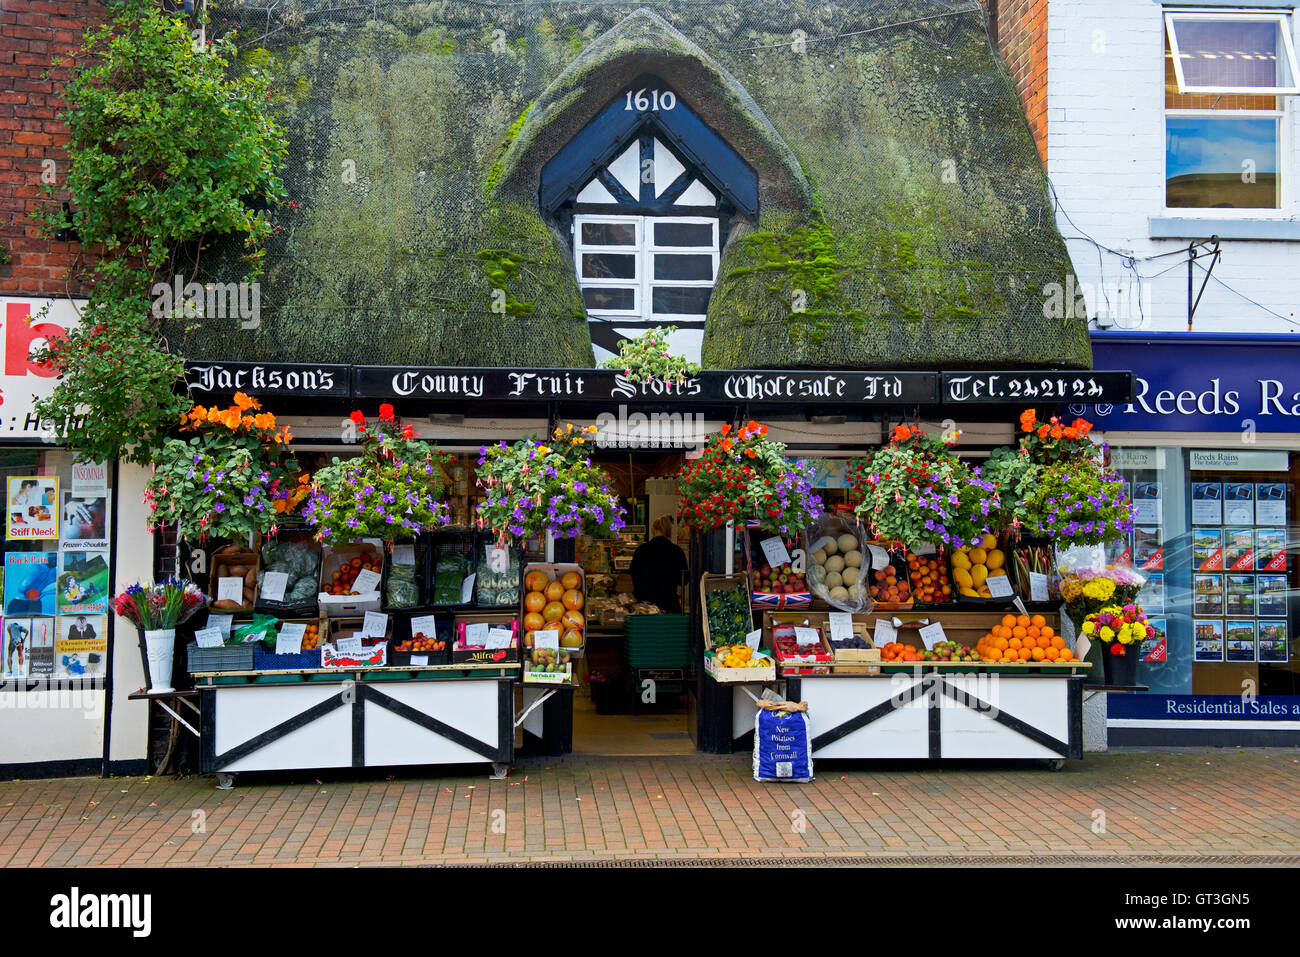 Grocers shop dans la région de Stafford, Staffordshire, Angleterre, Royaume-Uni Banque D'Images